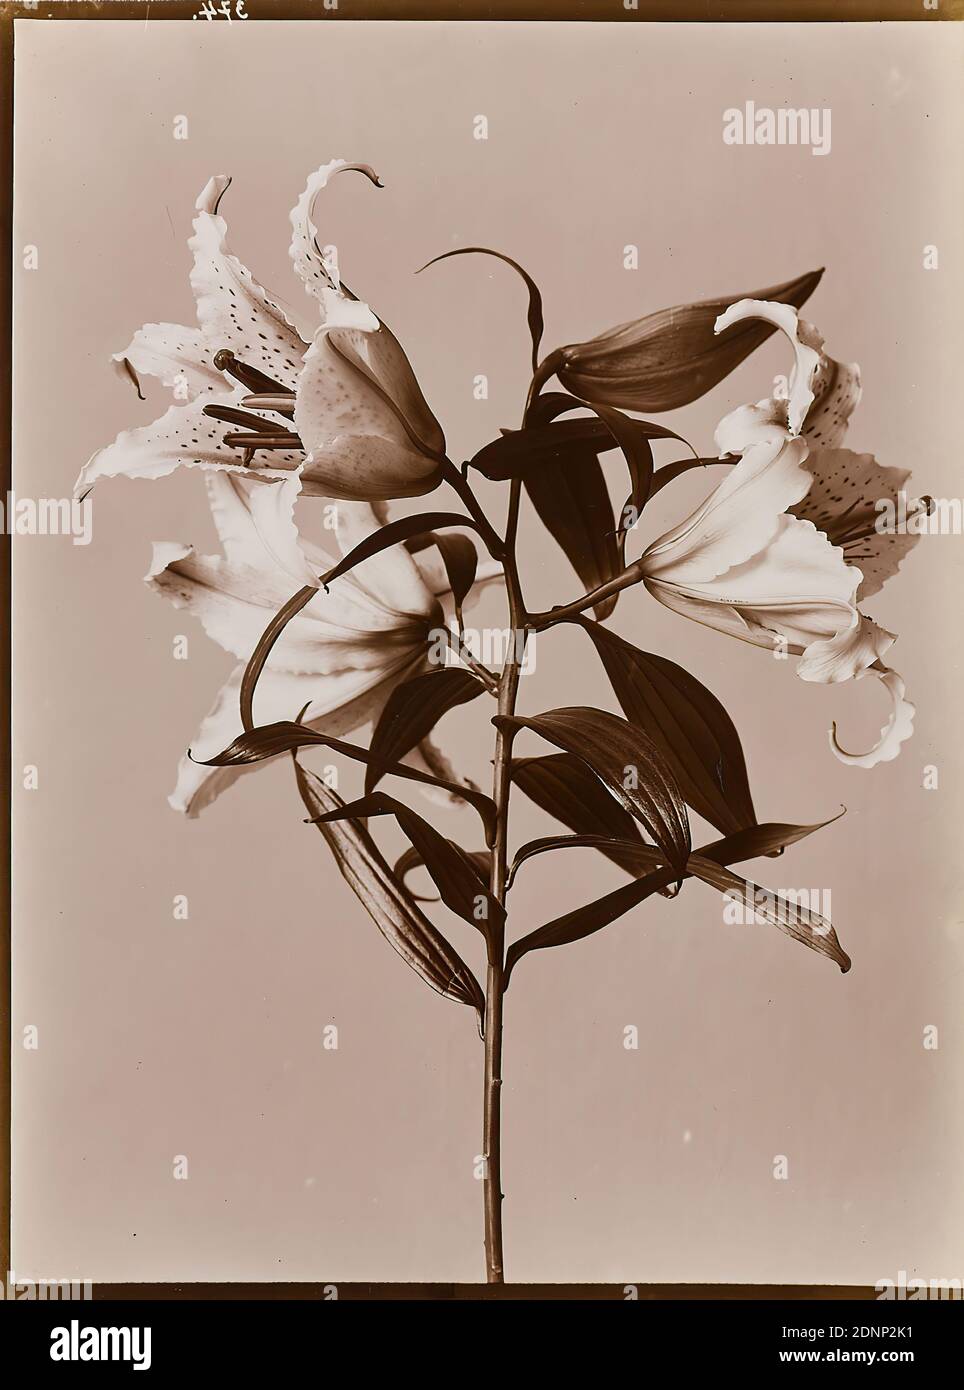 Wilhelm Weimar, étude florale, papier collodion, procédé positif noir et blanc, taille de l'image: Hauteur: 23,40 cm; largeur: 17,50 cm, numéroté: Verso: 374, photographie, nénuphar Banque D'Images